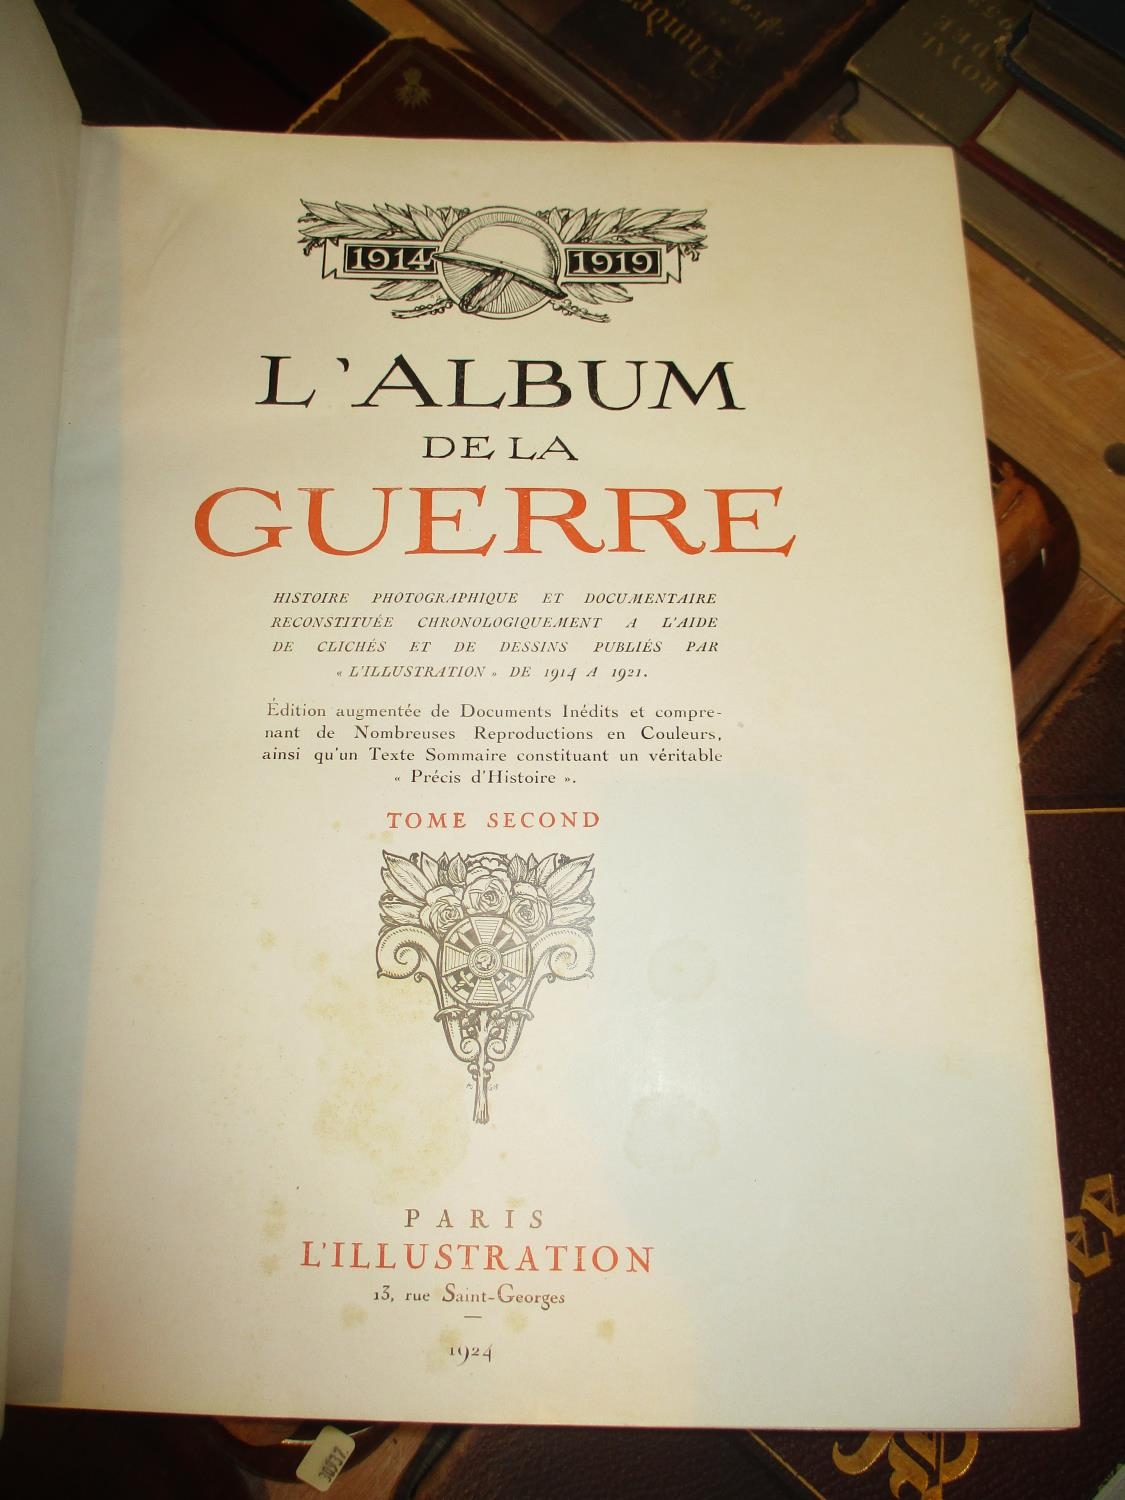 L'Album de la Guerre 1914 - 1919, Two Volumes, L'illustration, Paris 1924, covers of both scuffed,